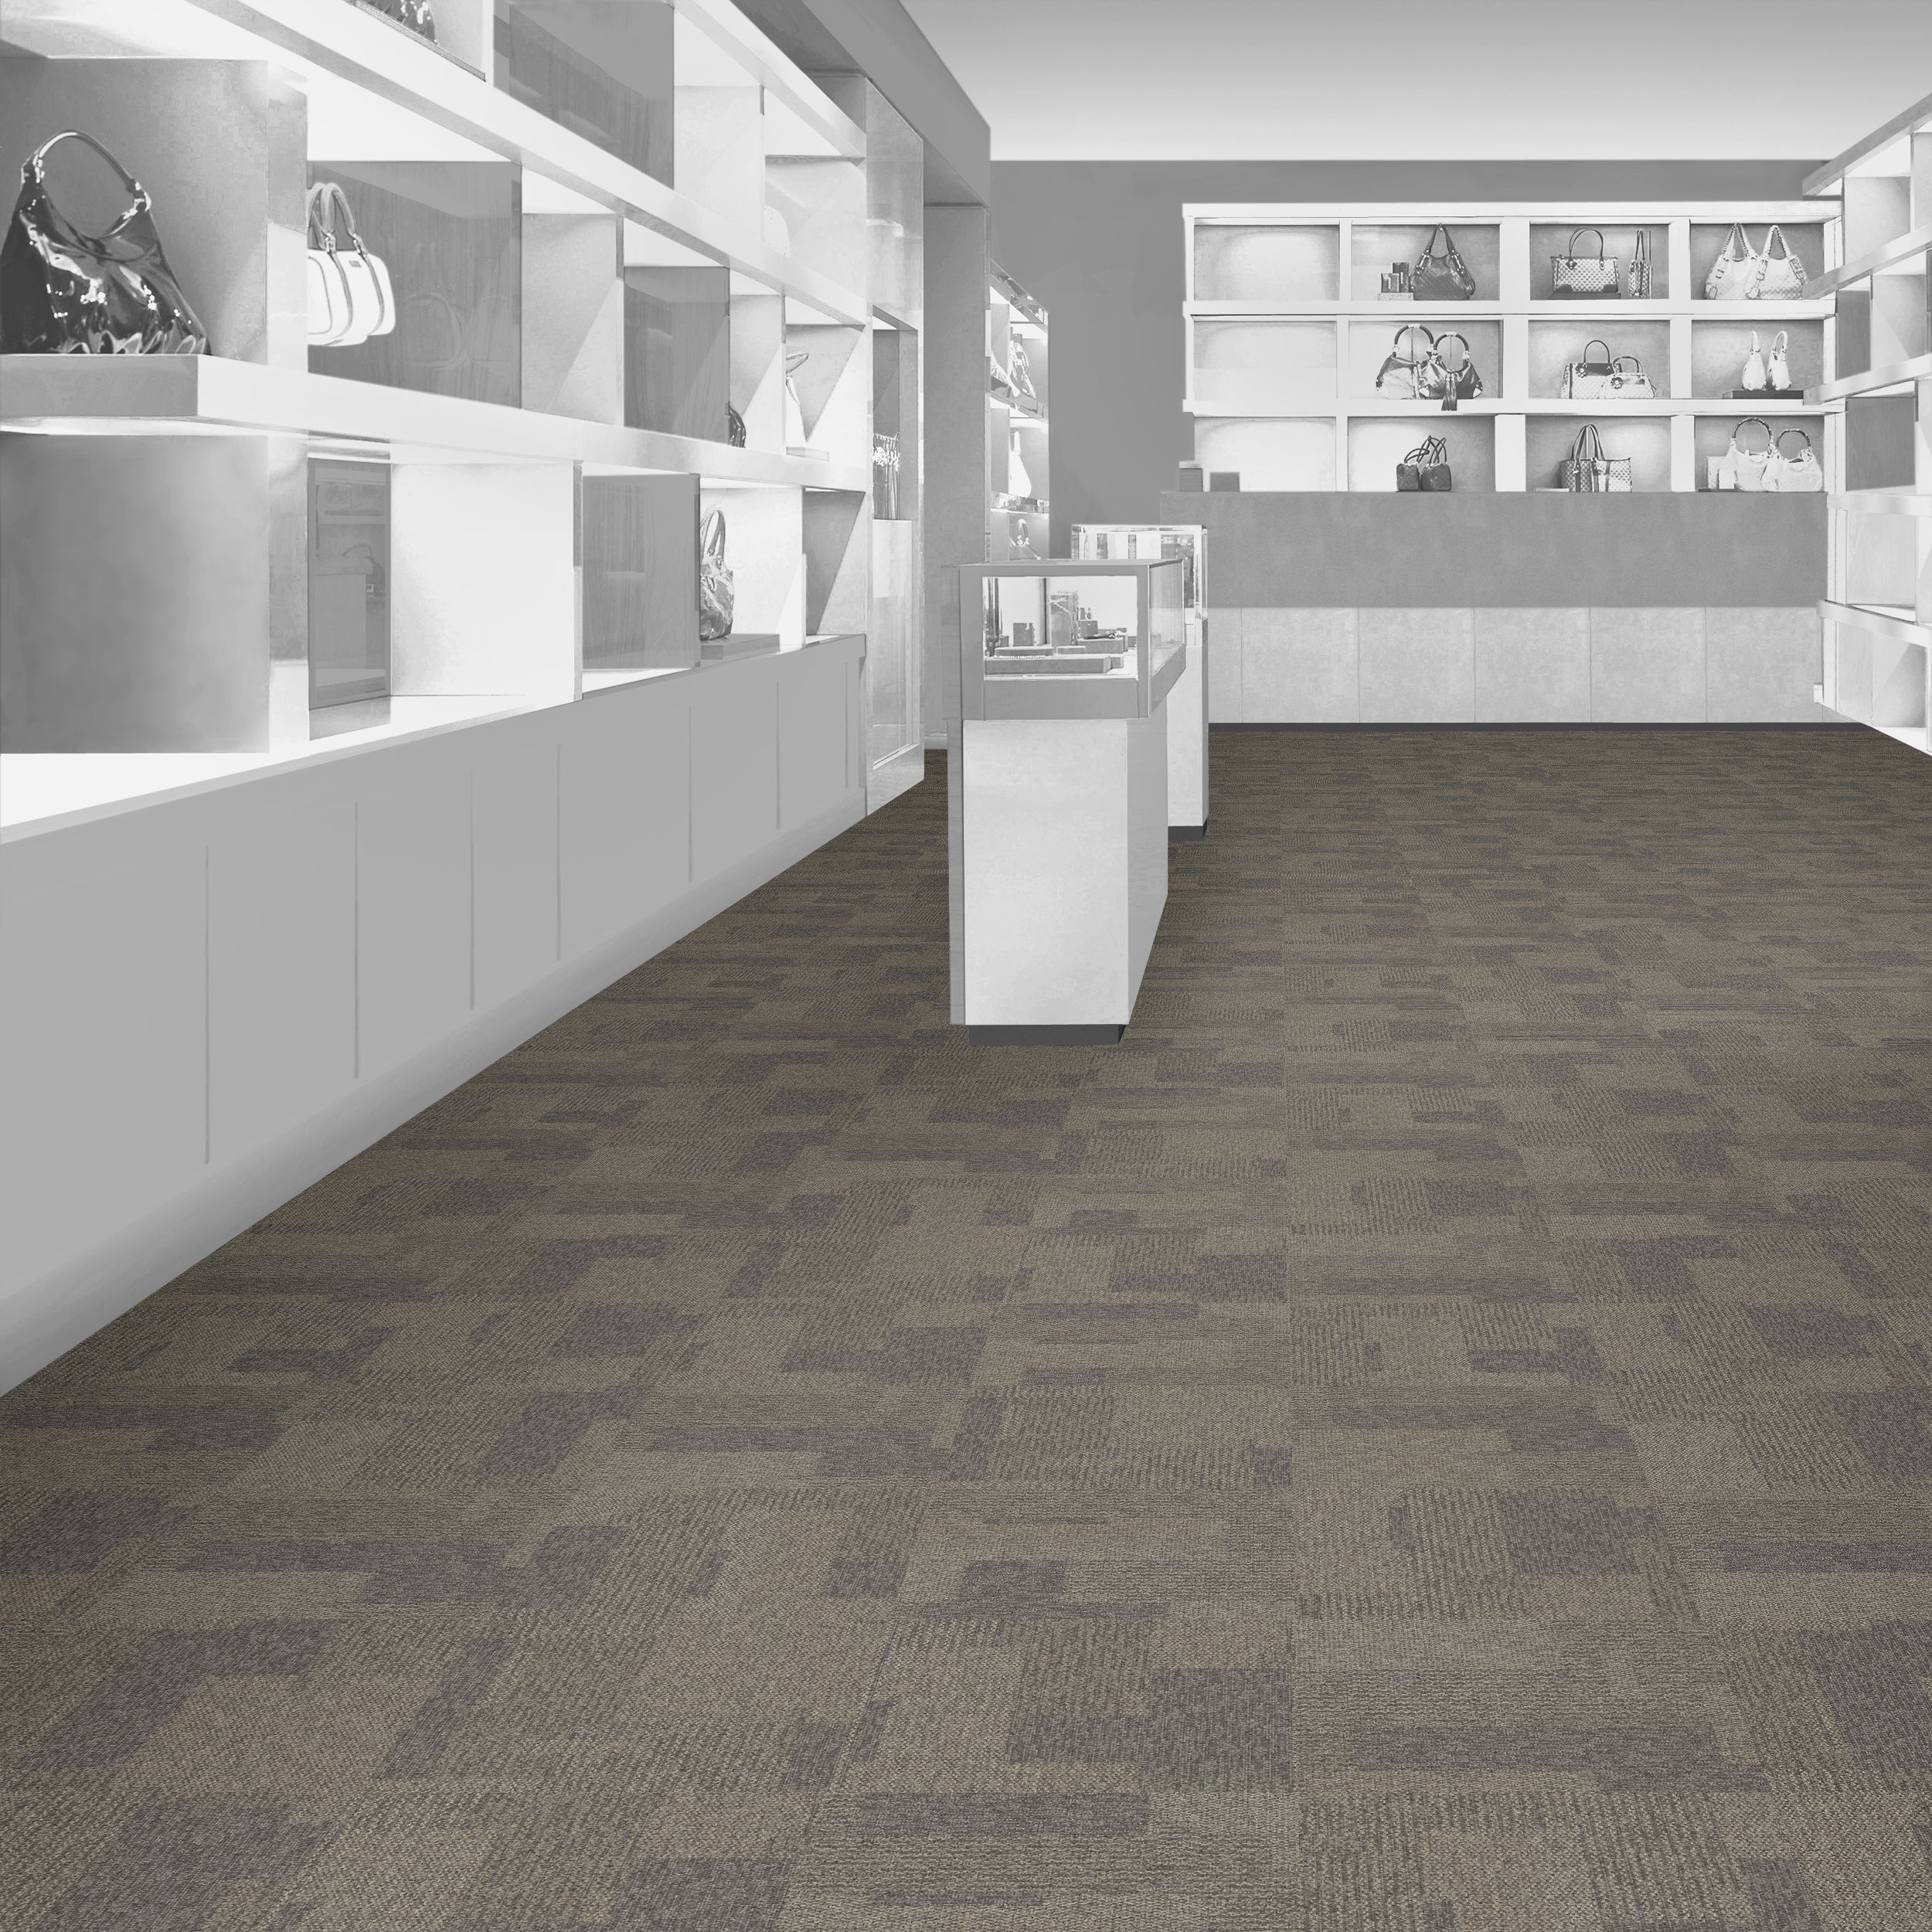 Parchment Transformation Carpet Tile in commercial store.